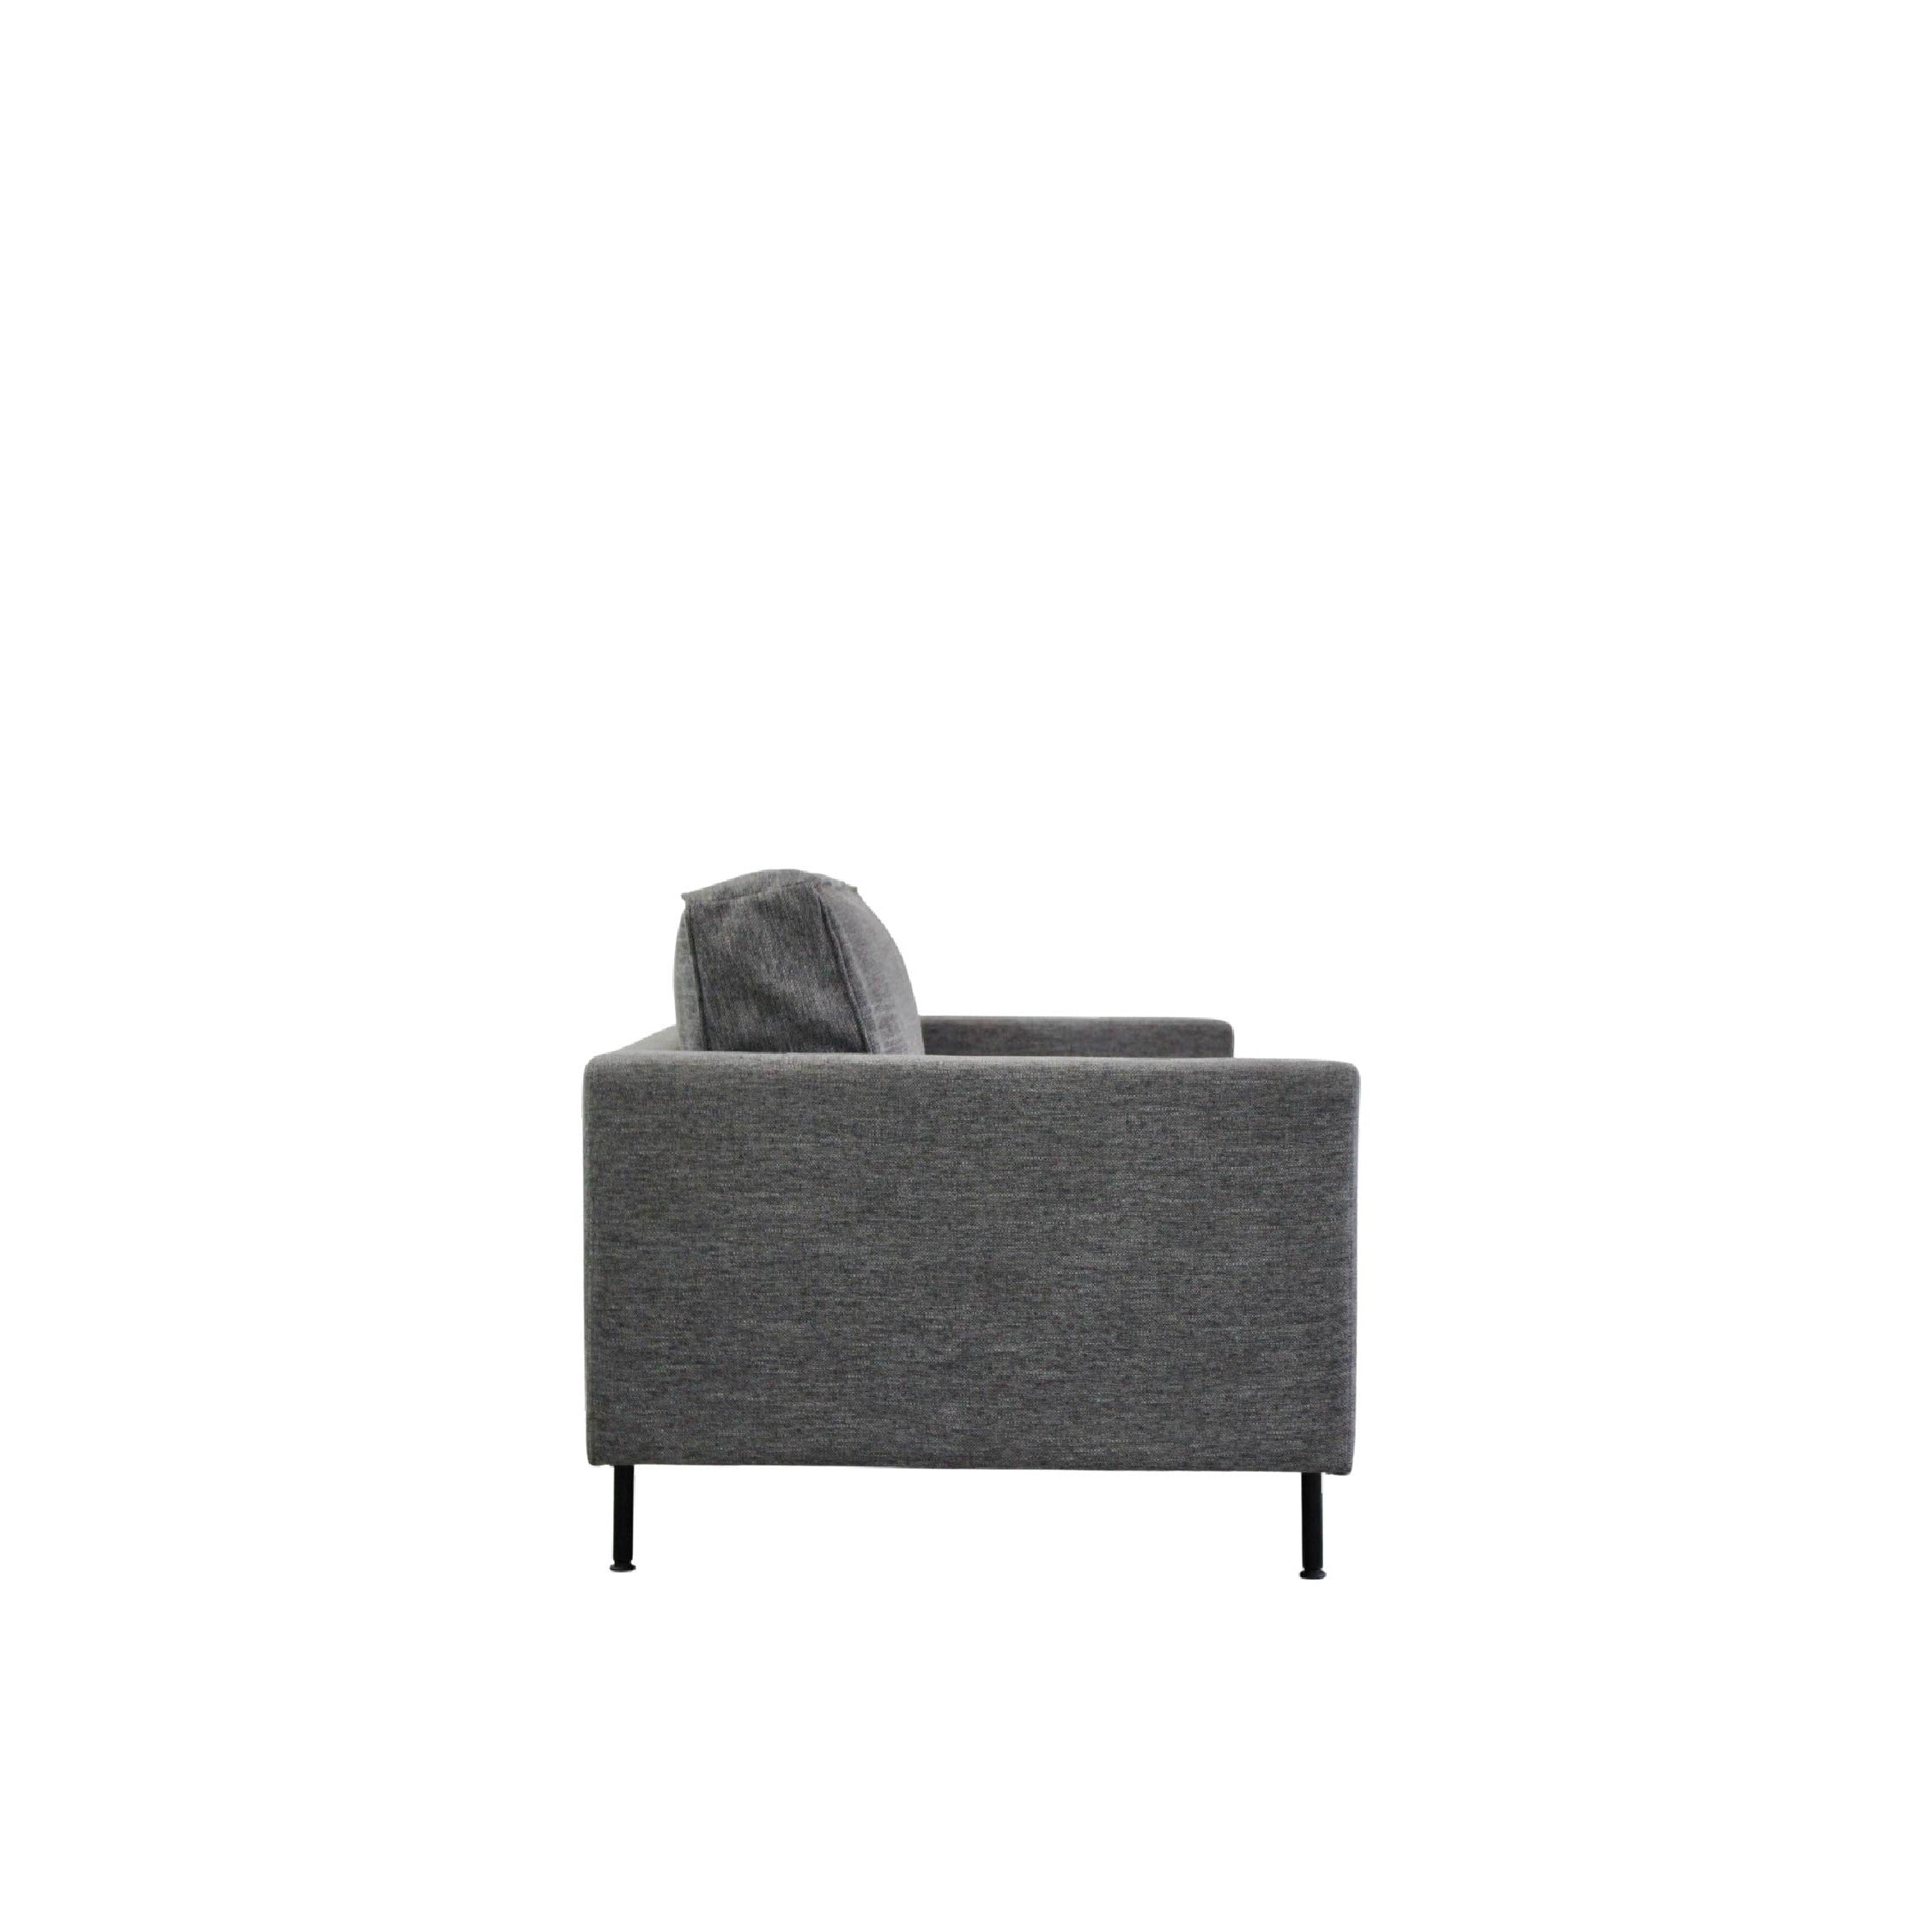 GARIS Sofa 2 Seater in Charcoal Fabric